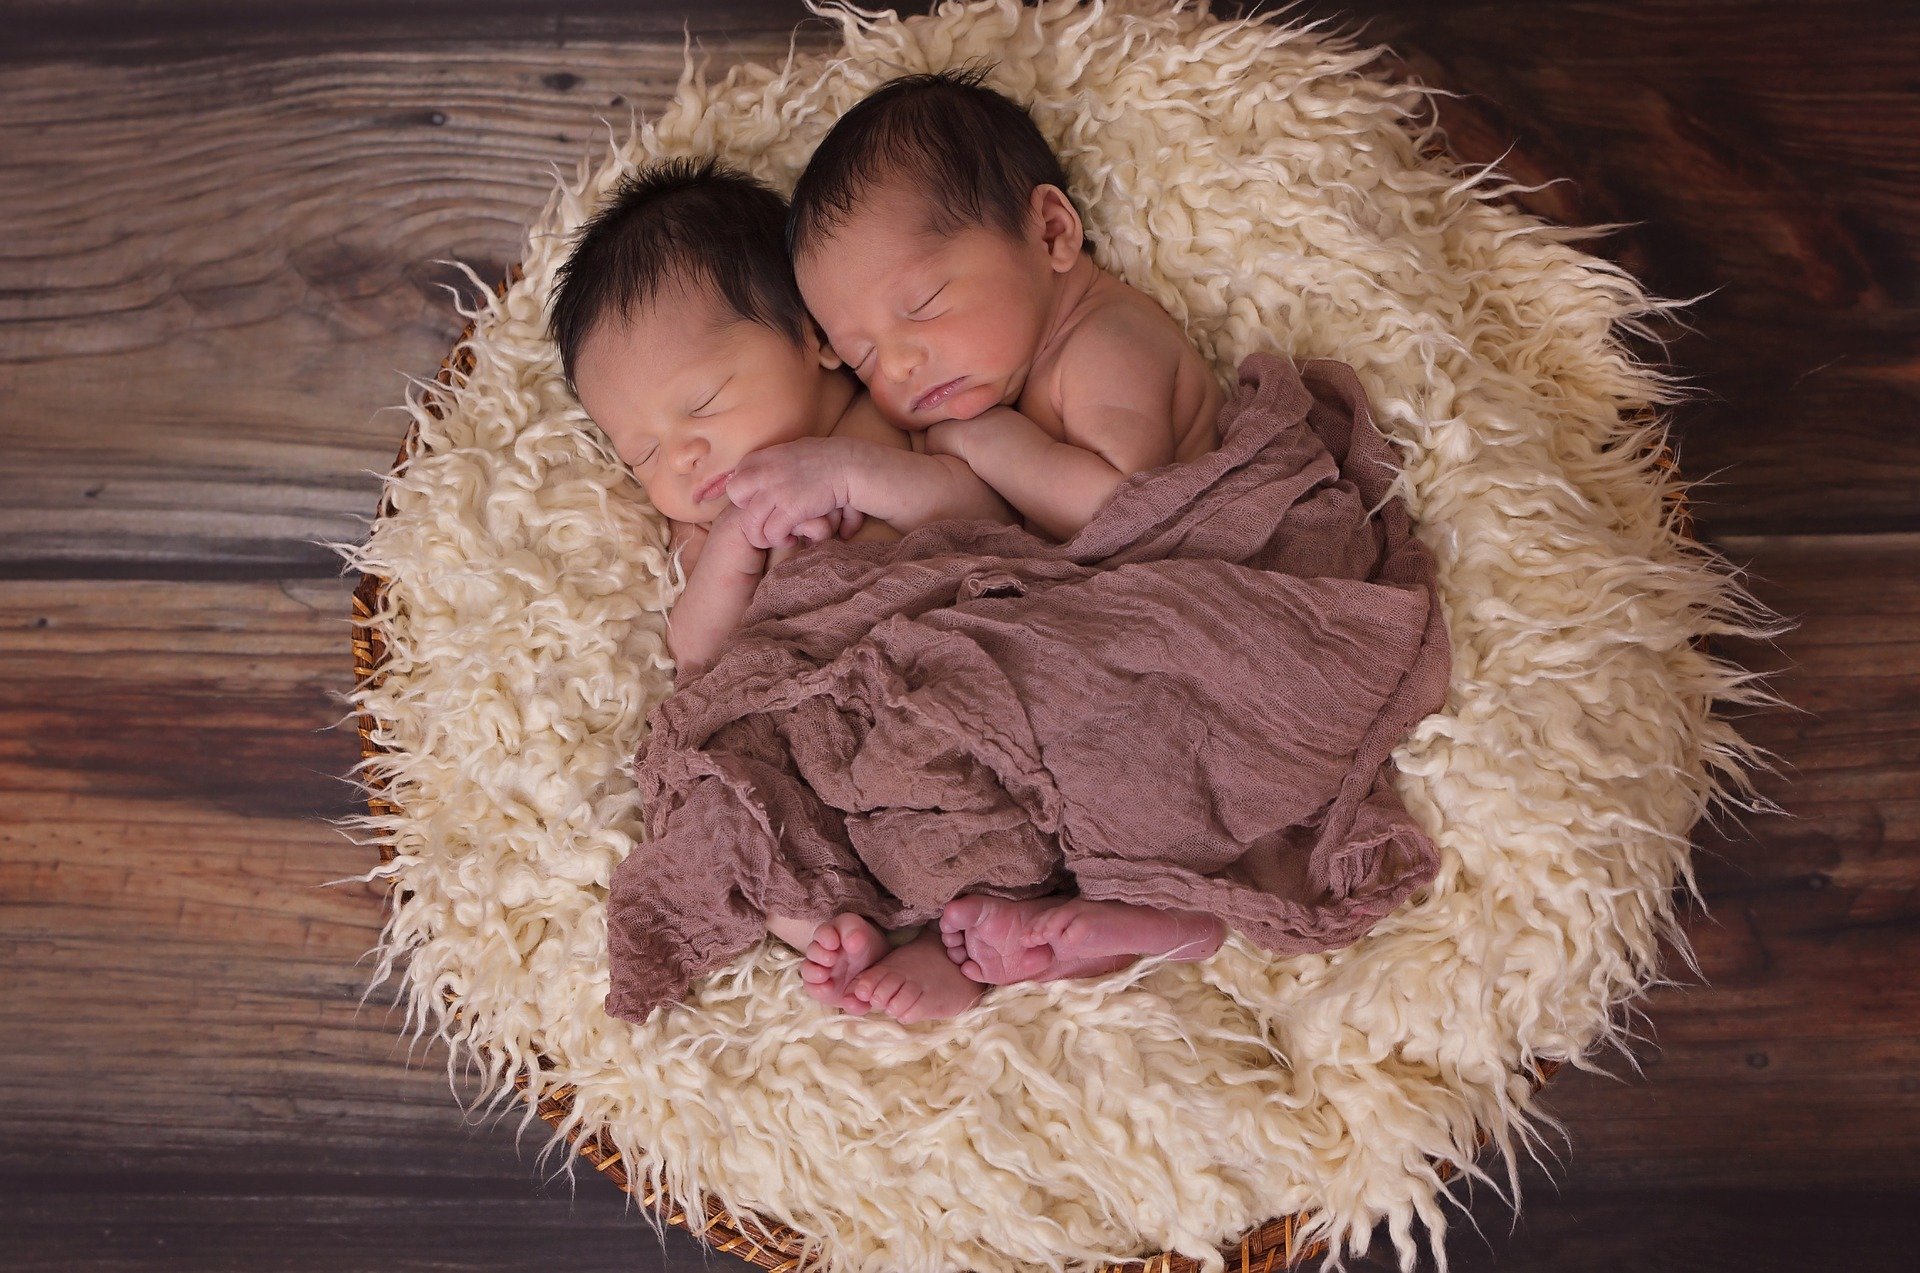 Des bébés jumeaux en train de dormir | Pixabay